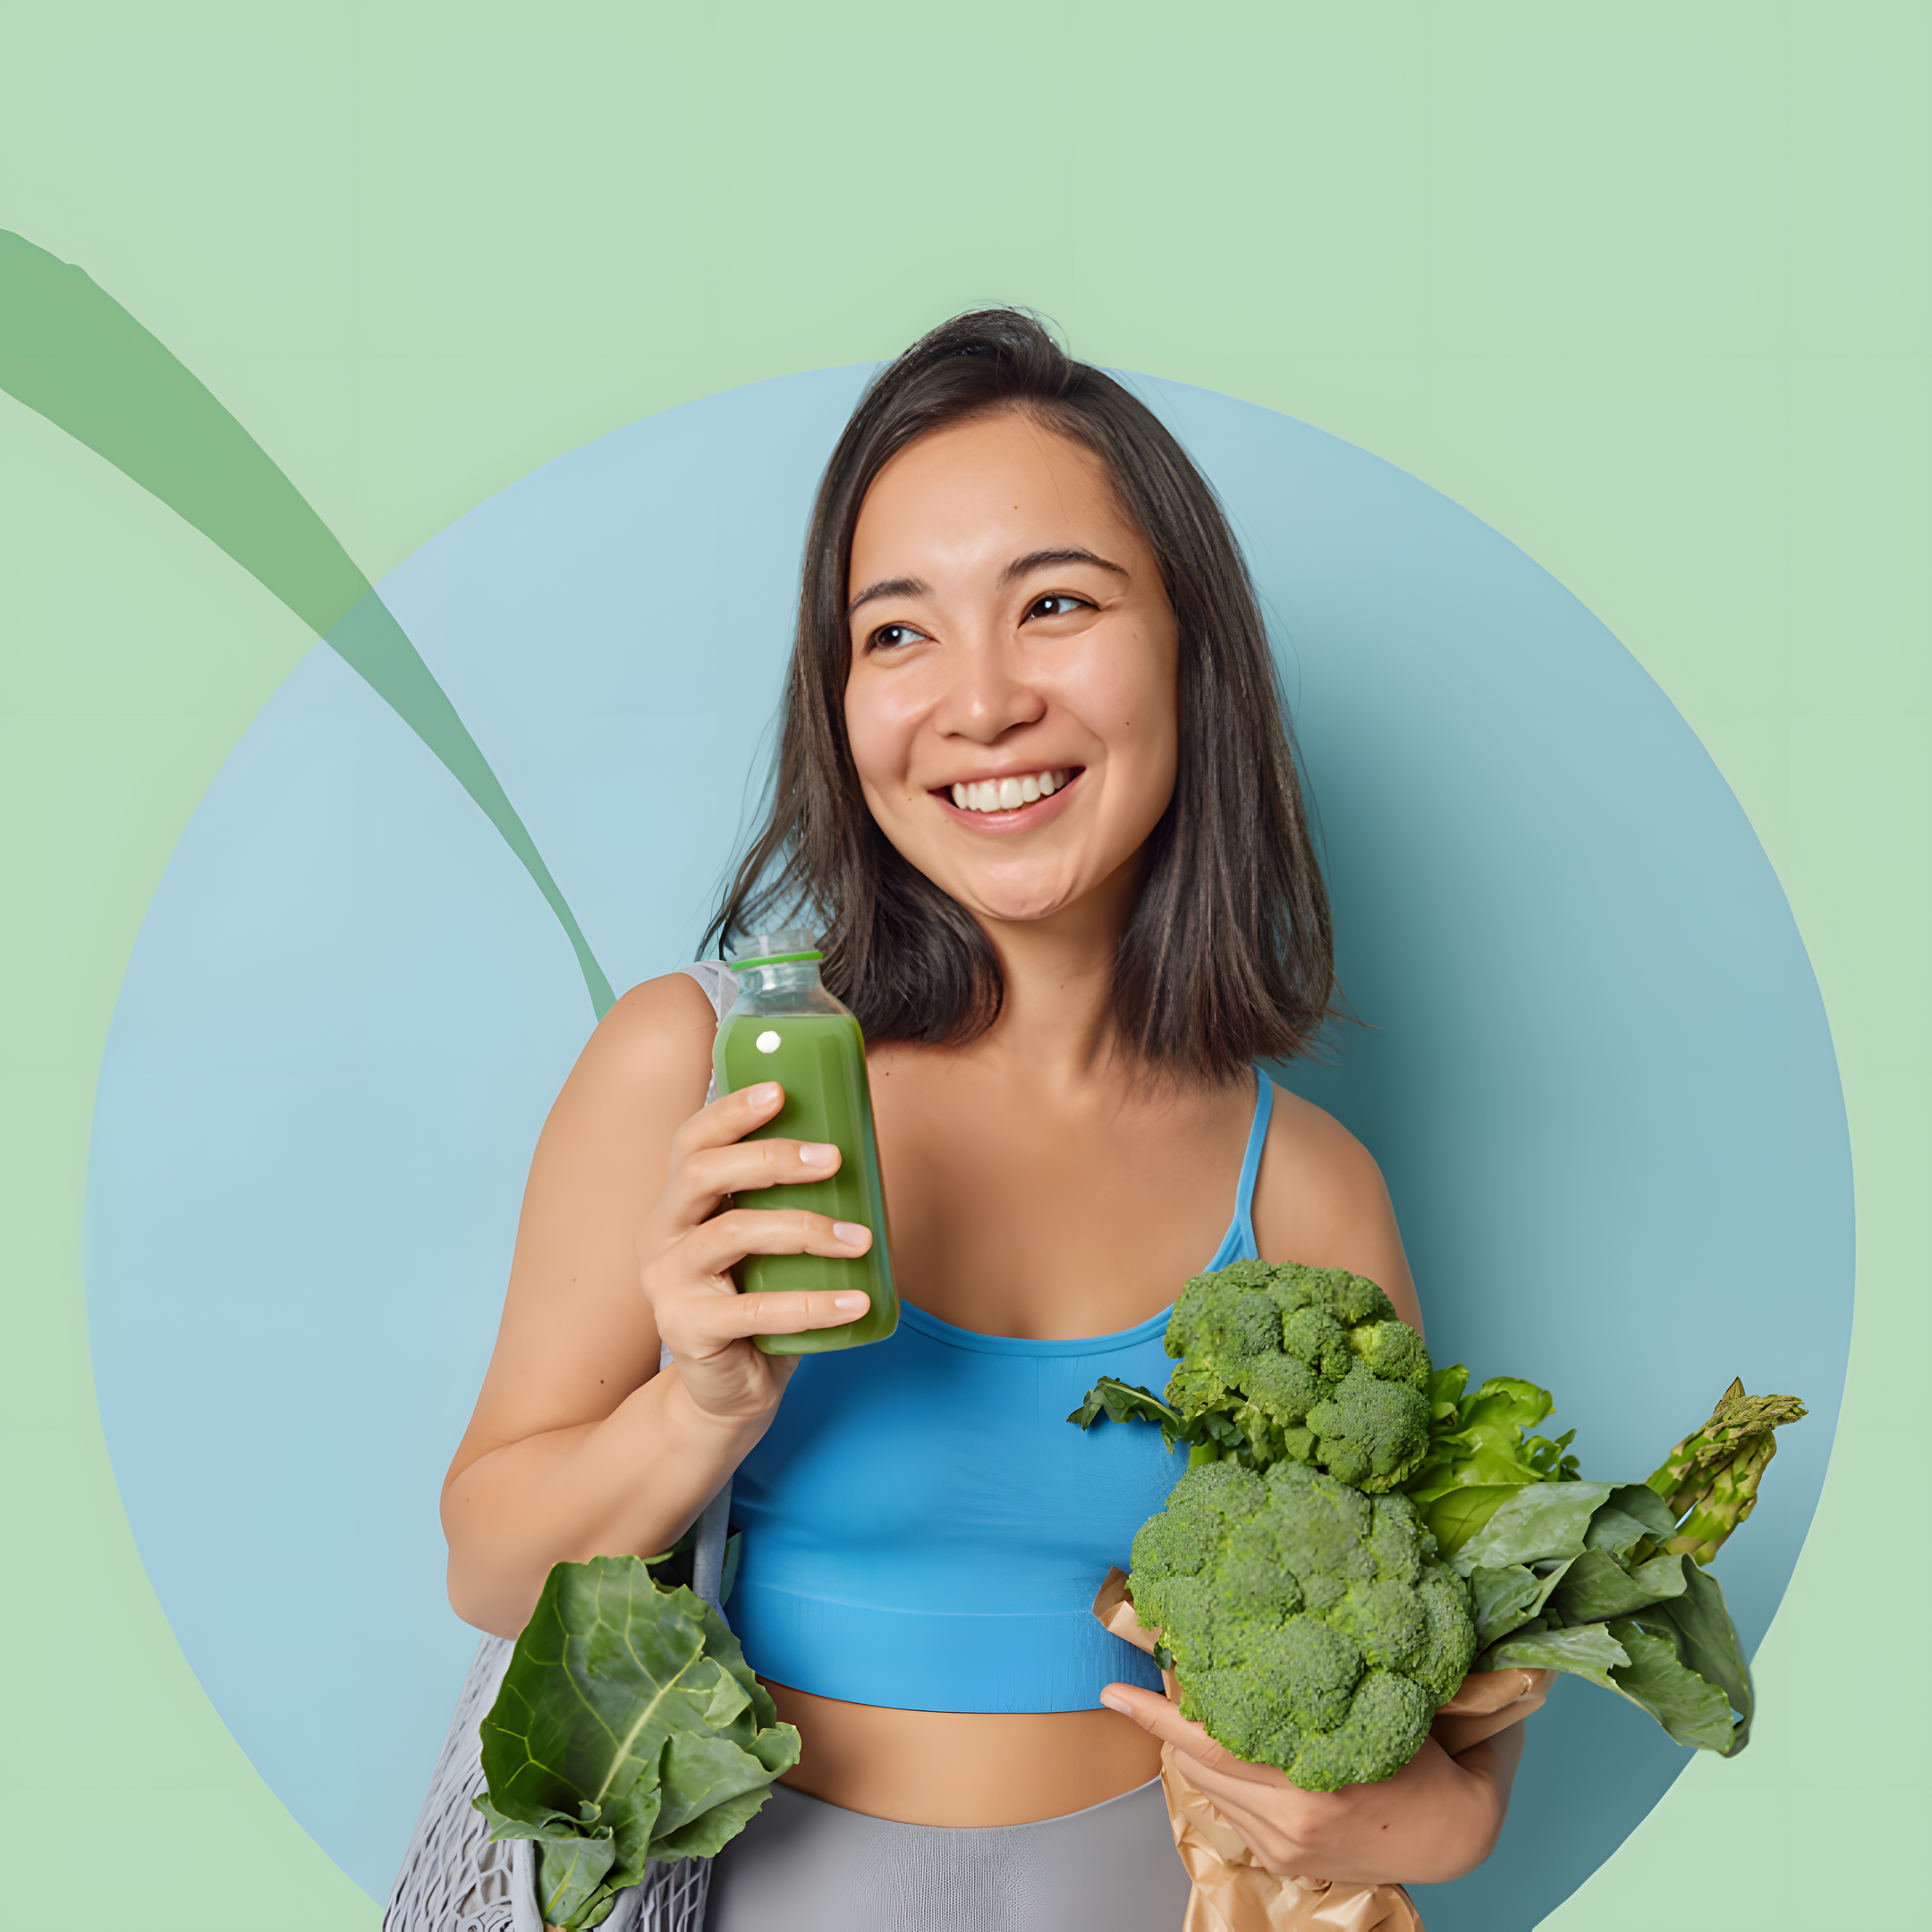 Lächelnde Person in blauem Sporttop hält einen grünen Smoothie und ein Bündel frischen Brokkoli, symbolisiert vegane Ernährung und Lebensstil.